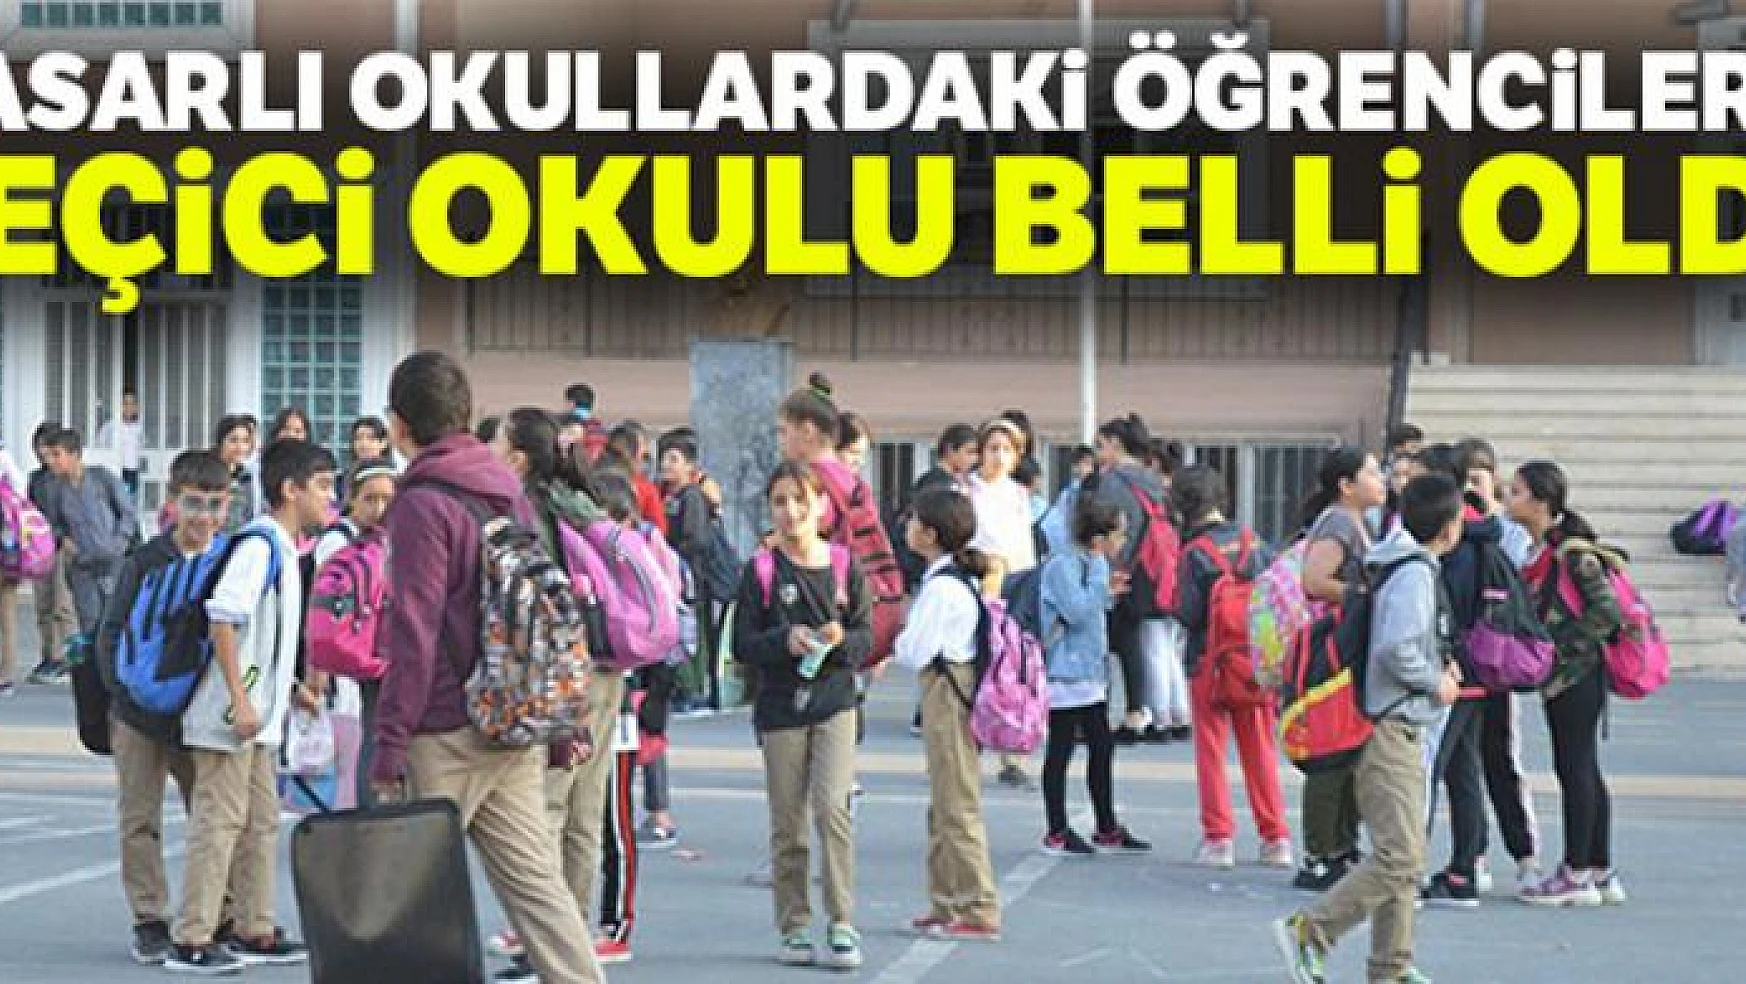 İstanbul Valiliği'nden hasarlı okullarla ilgili açıklama